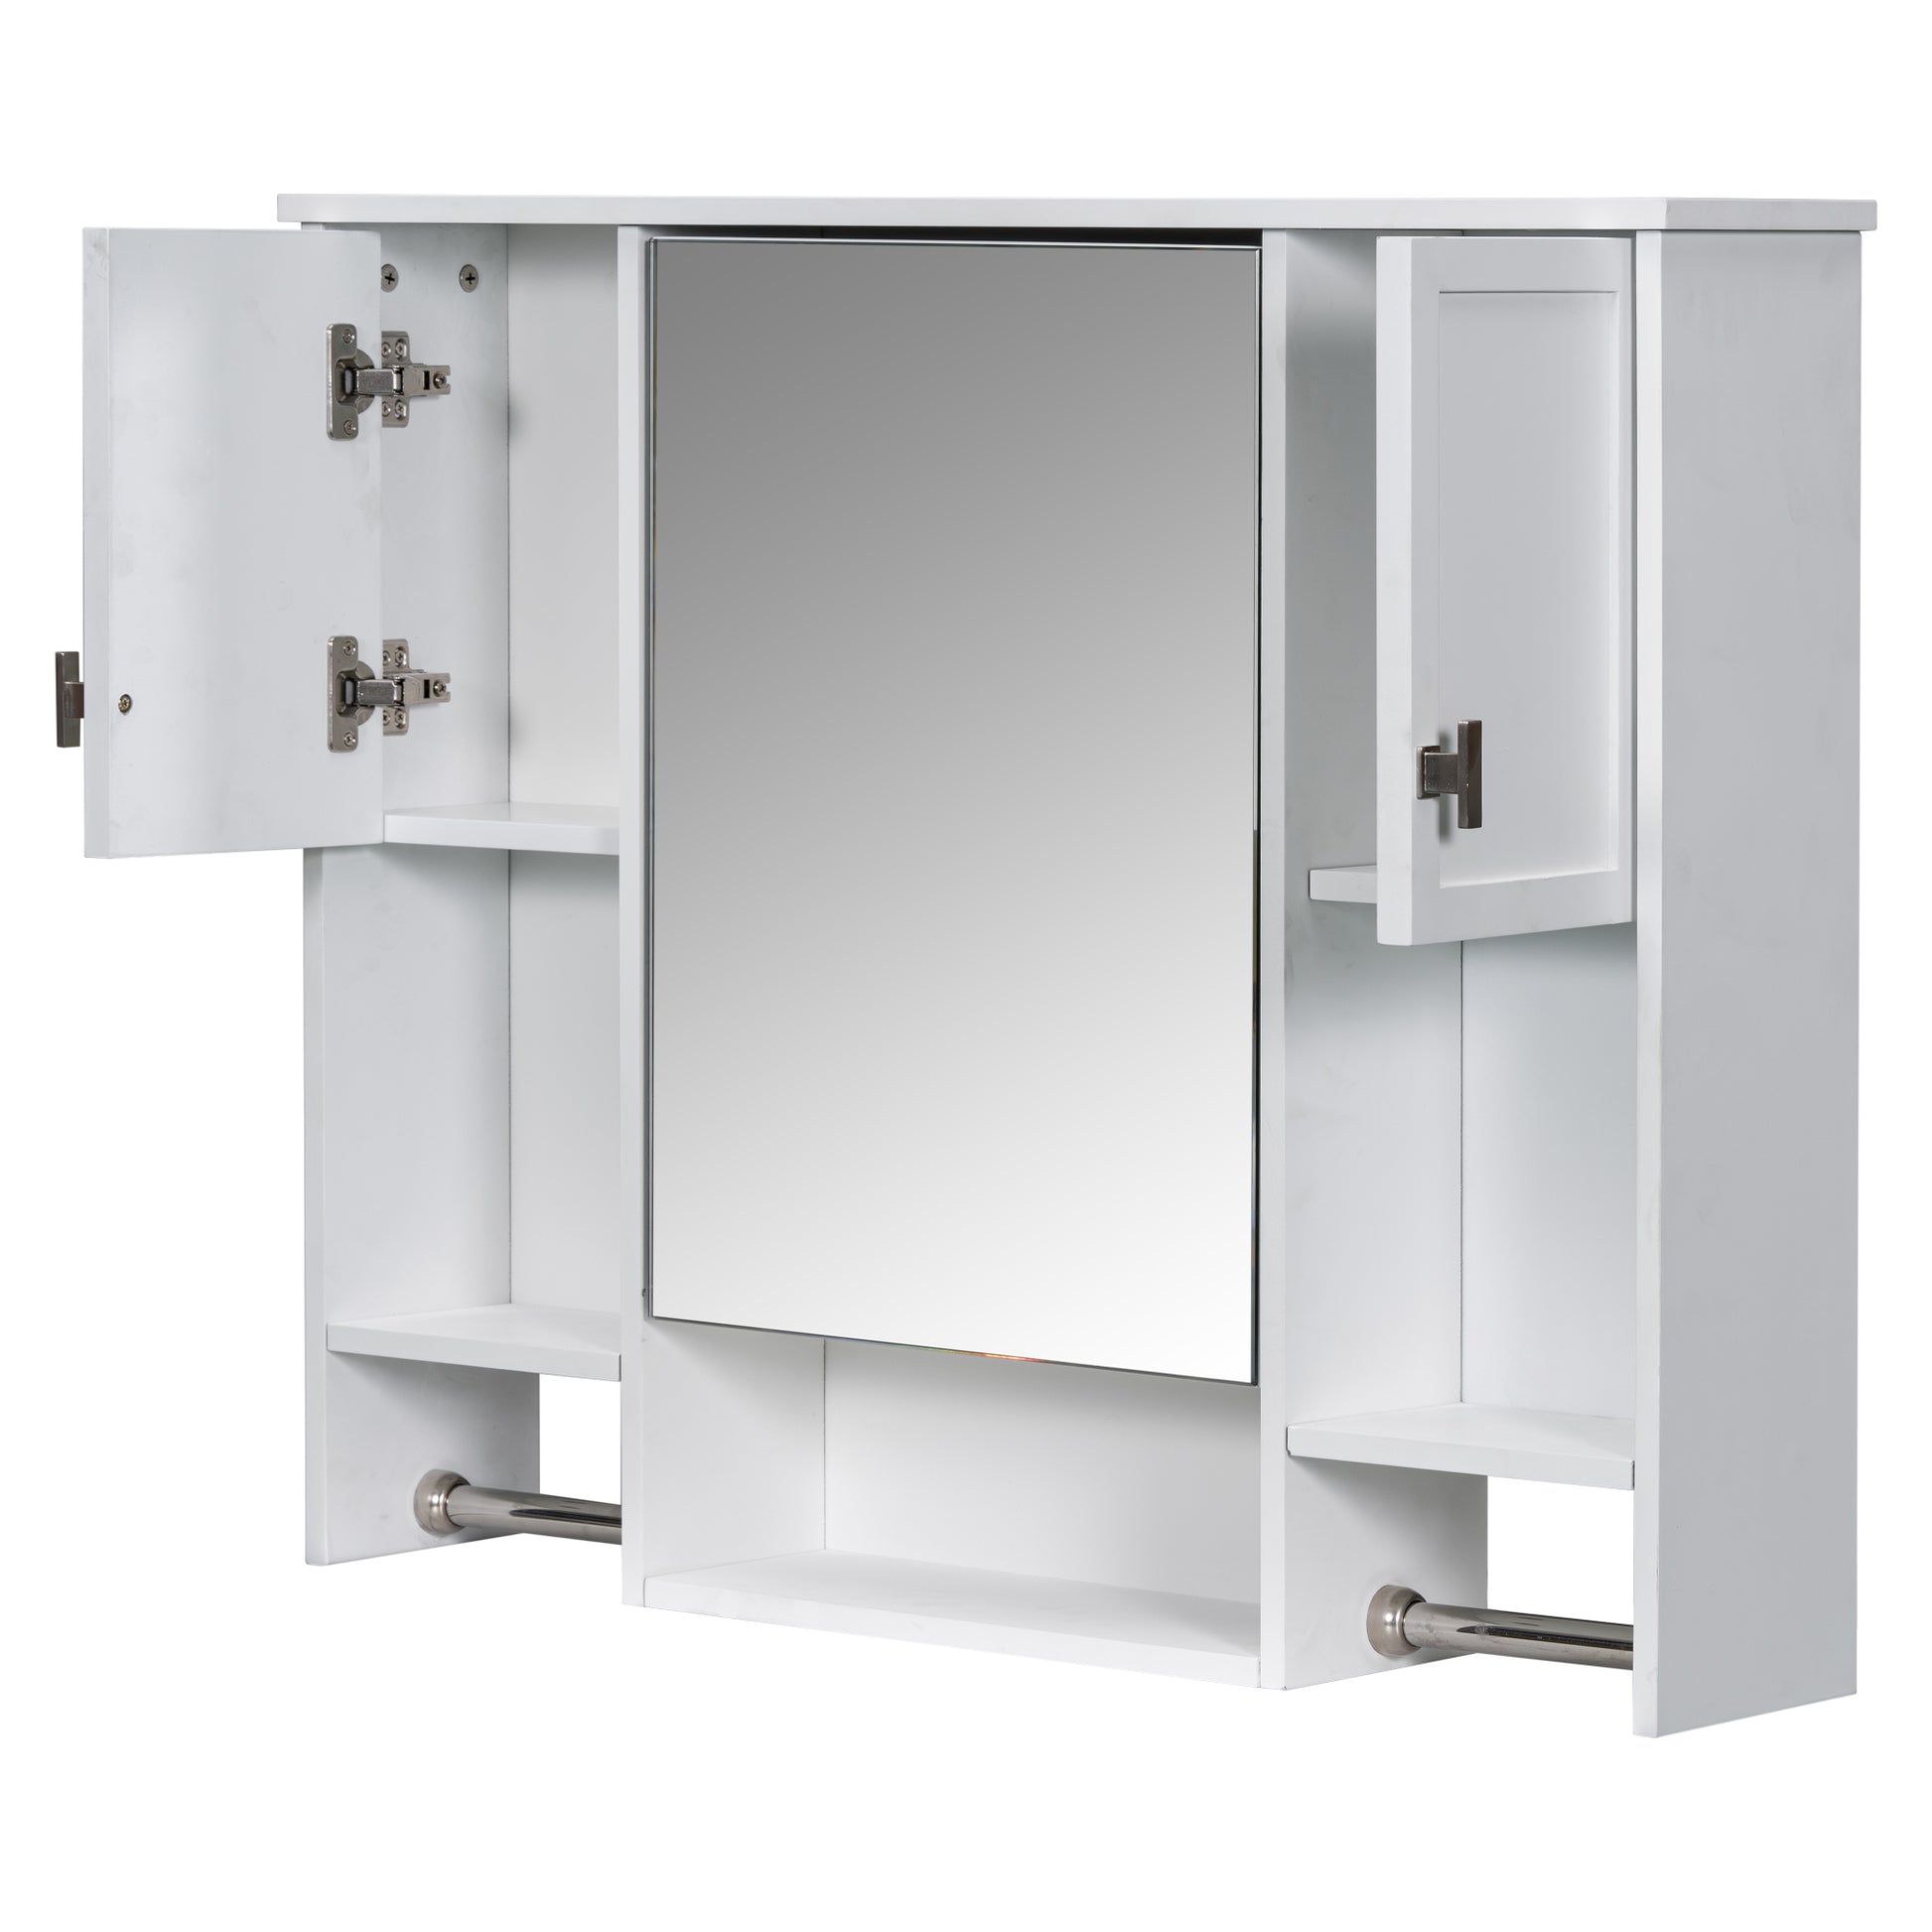 35'' x 28'' Modern Wall Mounted Bathroom Storage white-2-5+-mirror included-bathroom-wall